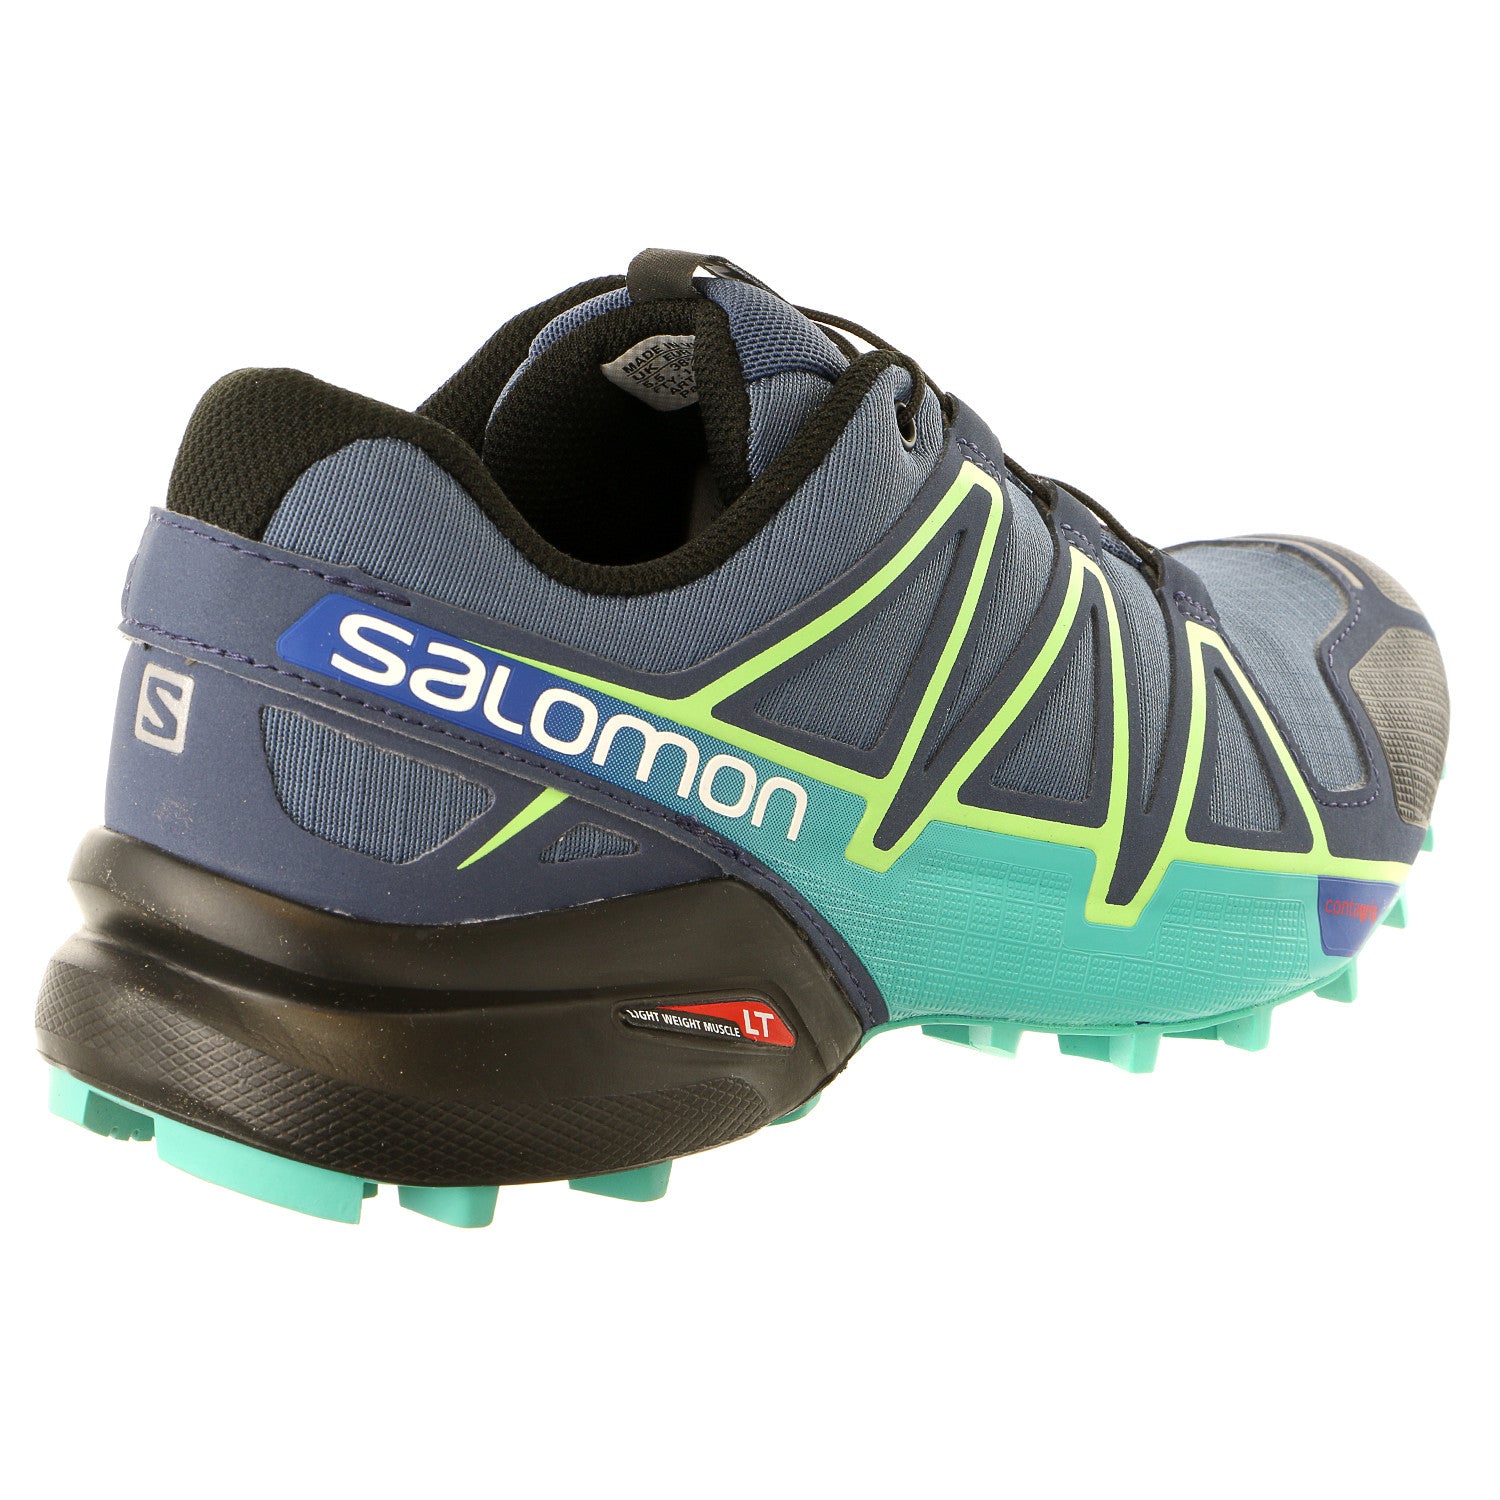 Women's Salomon Speedcross 4 Trail Running Shoes Grey Purple-Salomon  Speedcross 4 at bindings